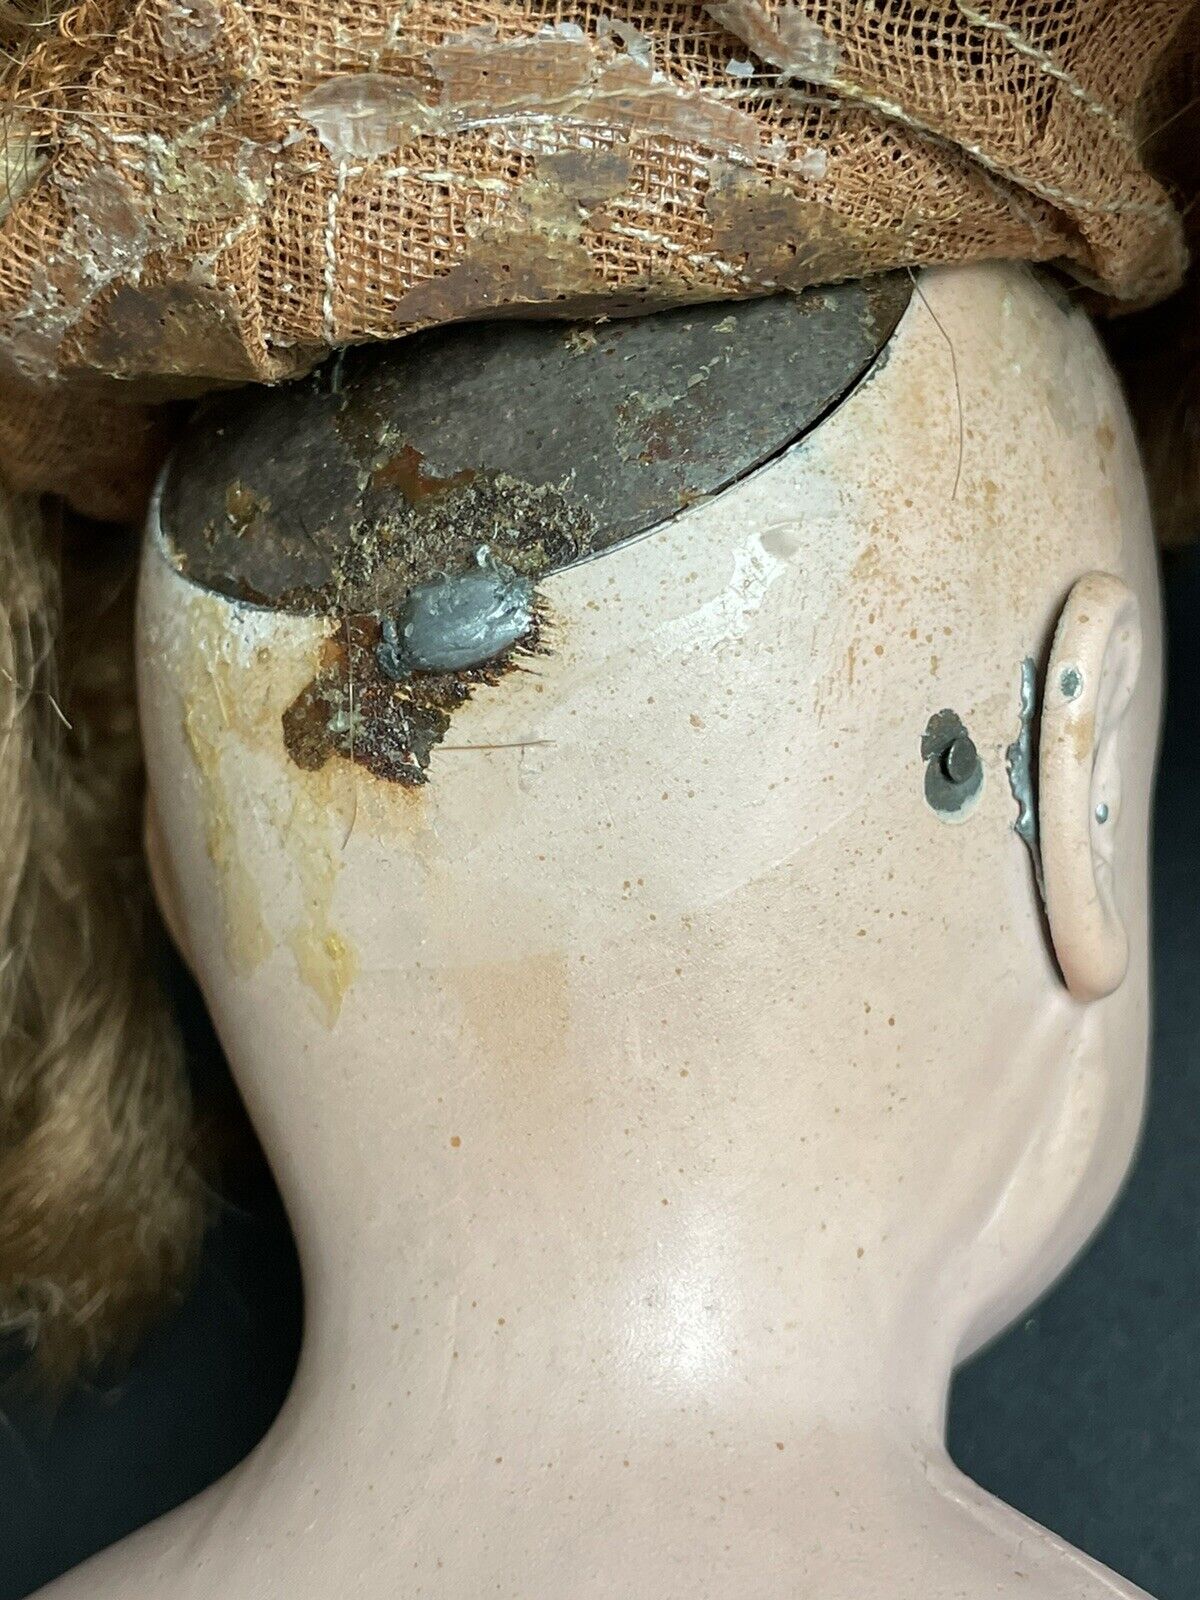 Antique German 22” Alfred Heller (?) Metal Head Glass Eyes Doll